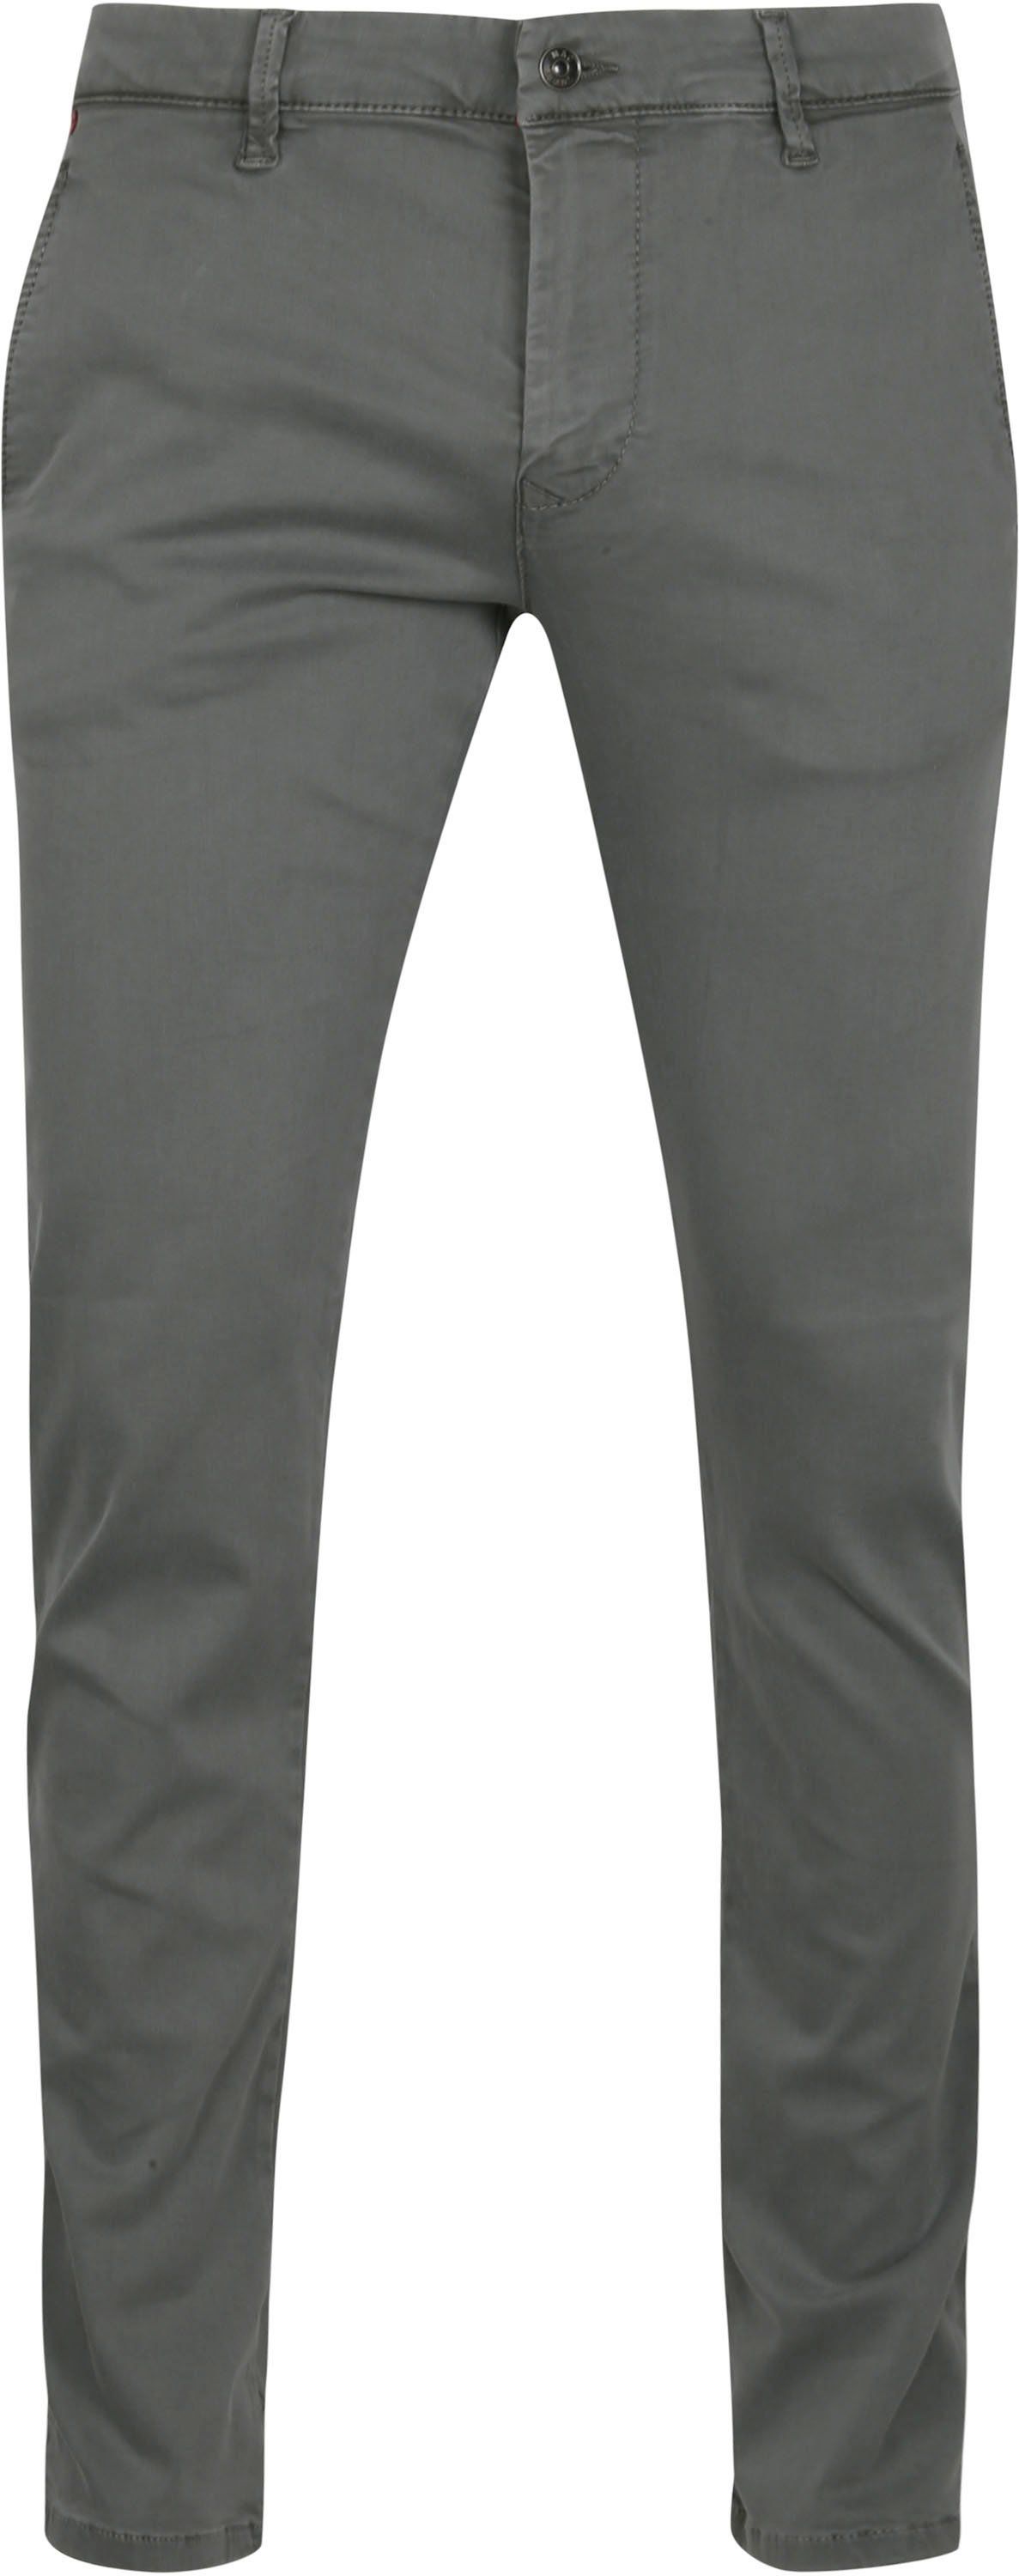 Mac Jeans Driver Pantalon Flexx Gris taille W 31